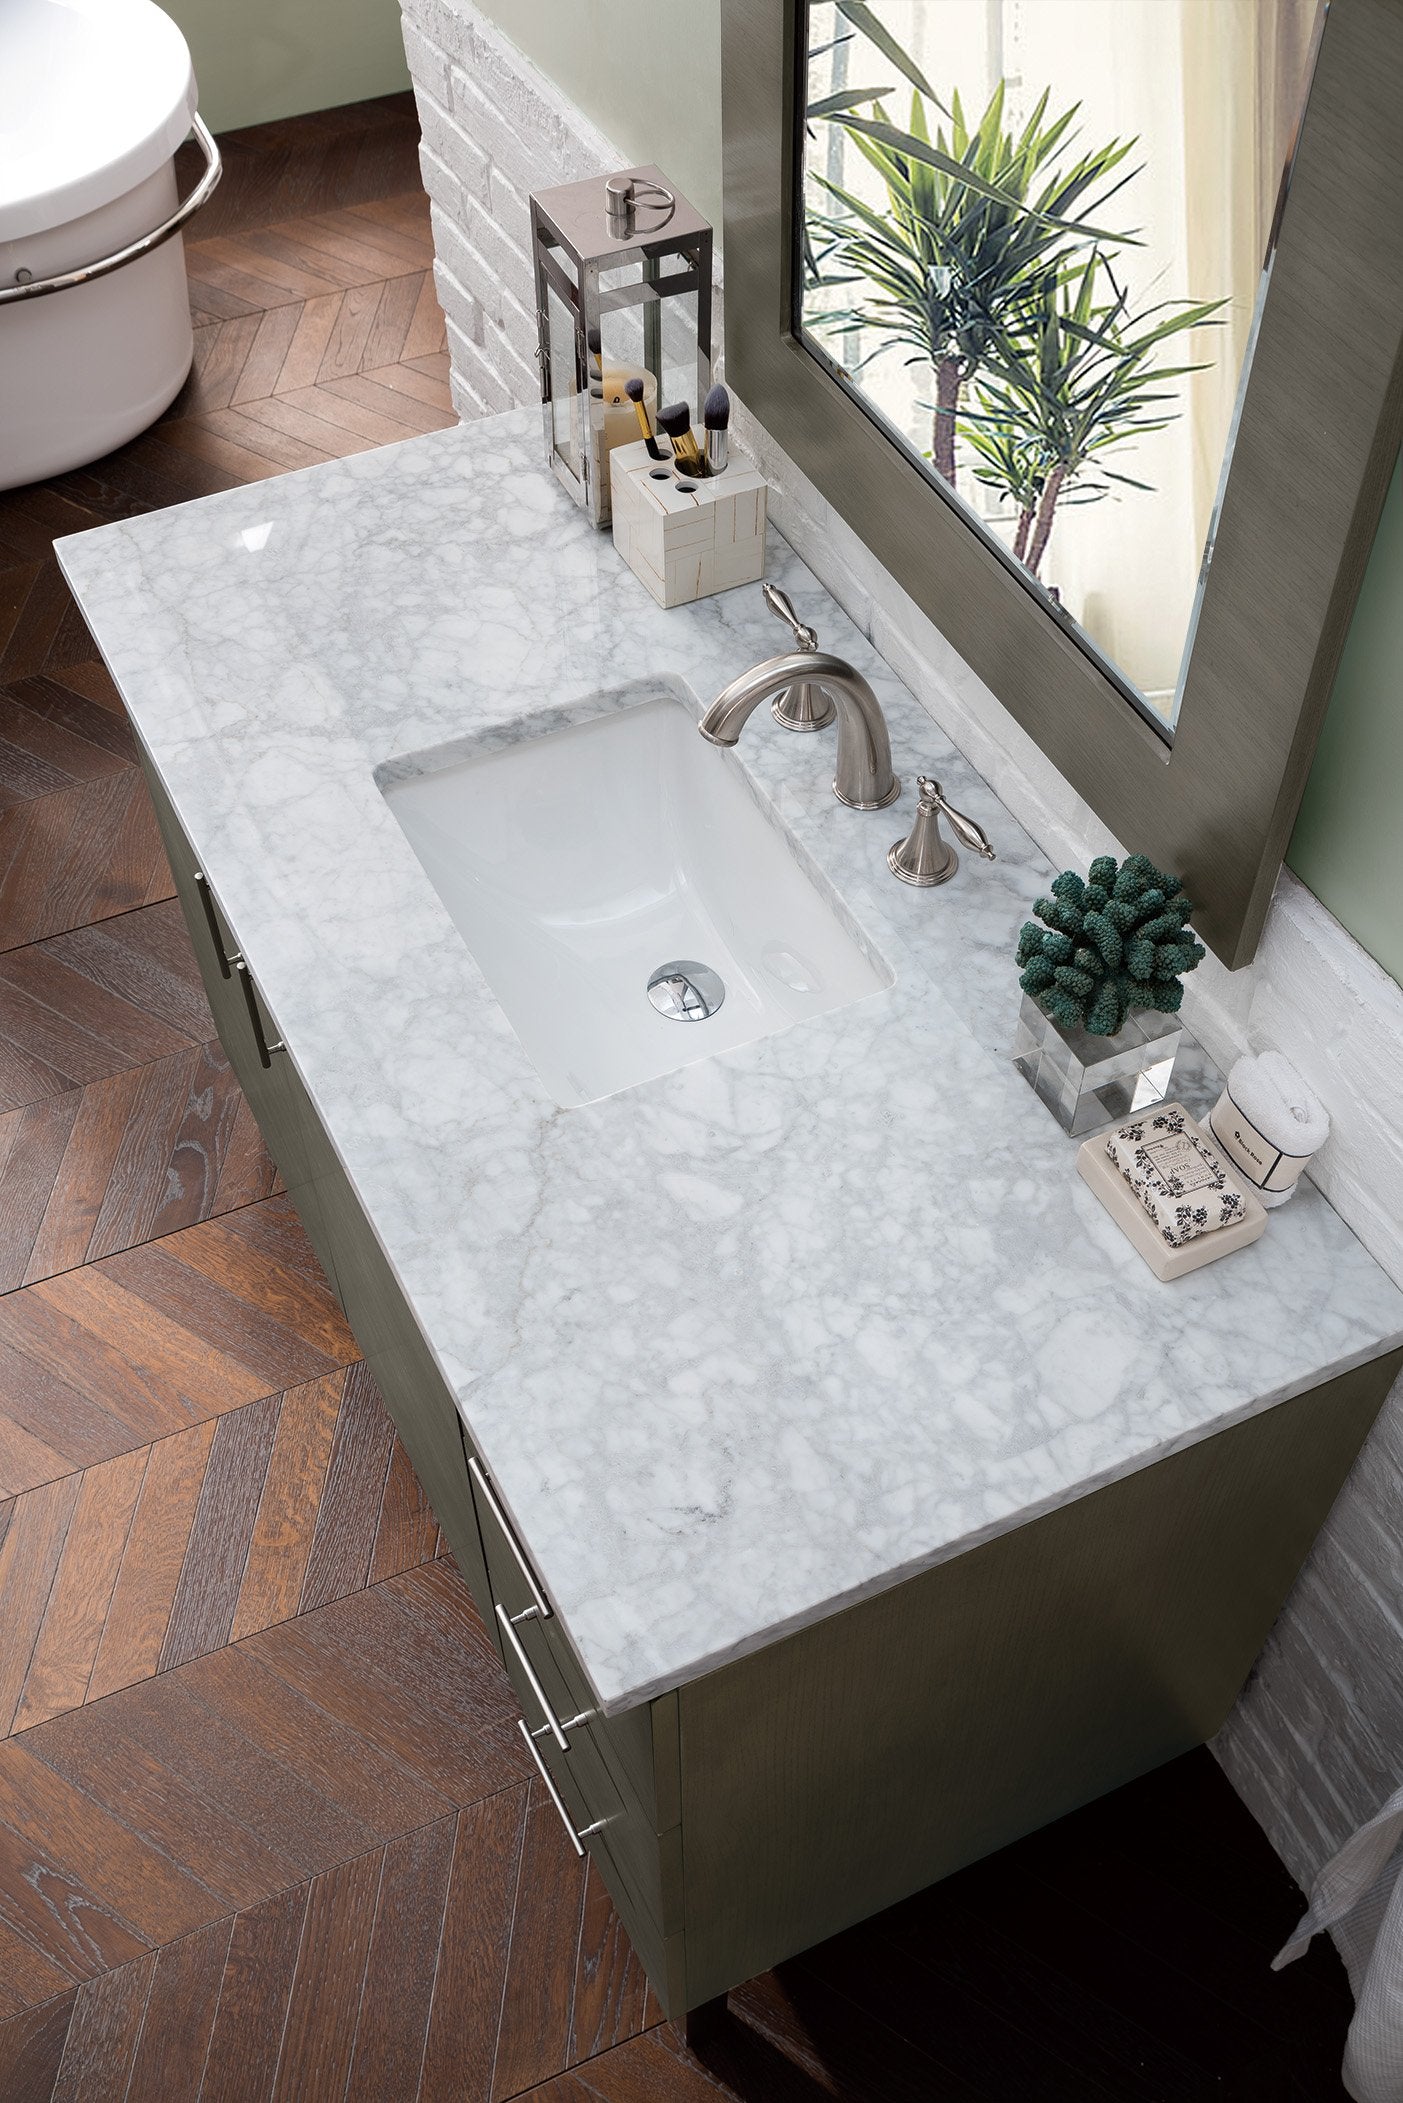 48" Metropolitan Silver Oak Single Sink Bathroom Vanity, James Martin Vanities - vanitiesdepot.com